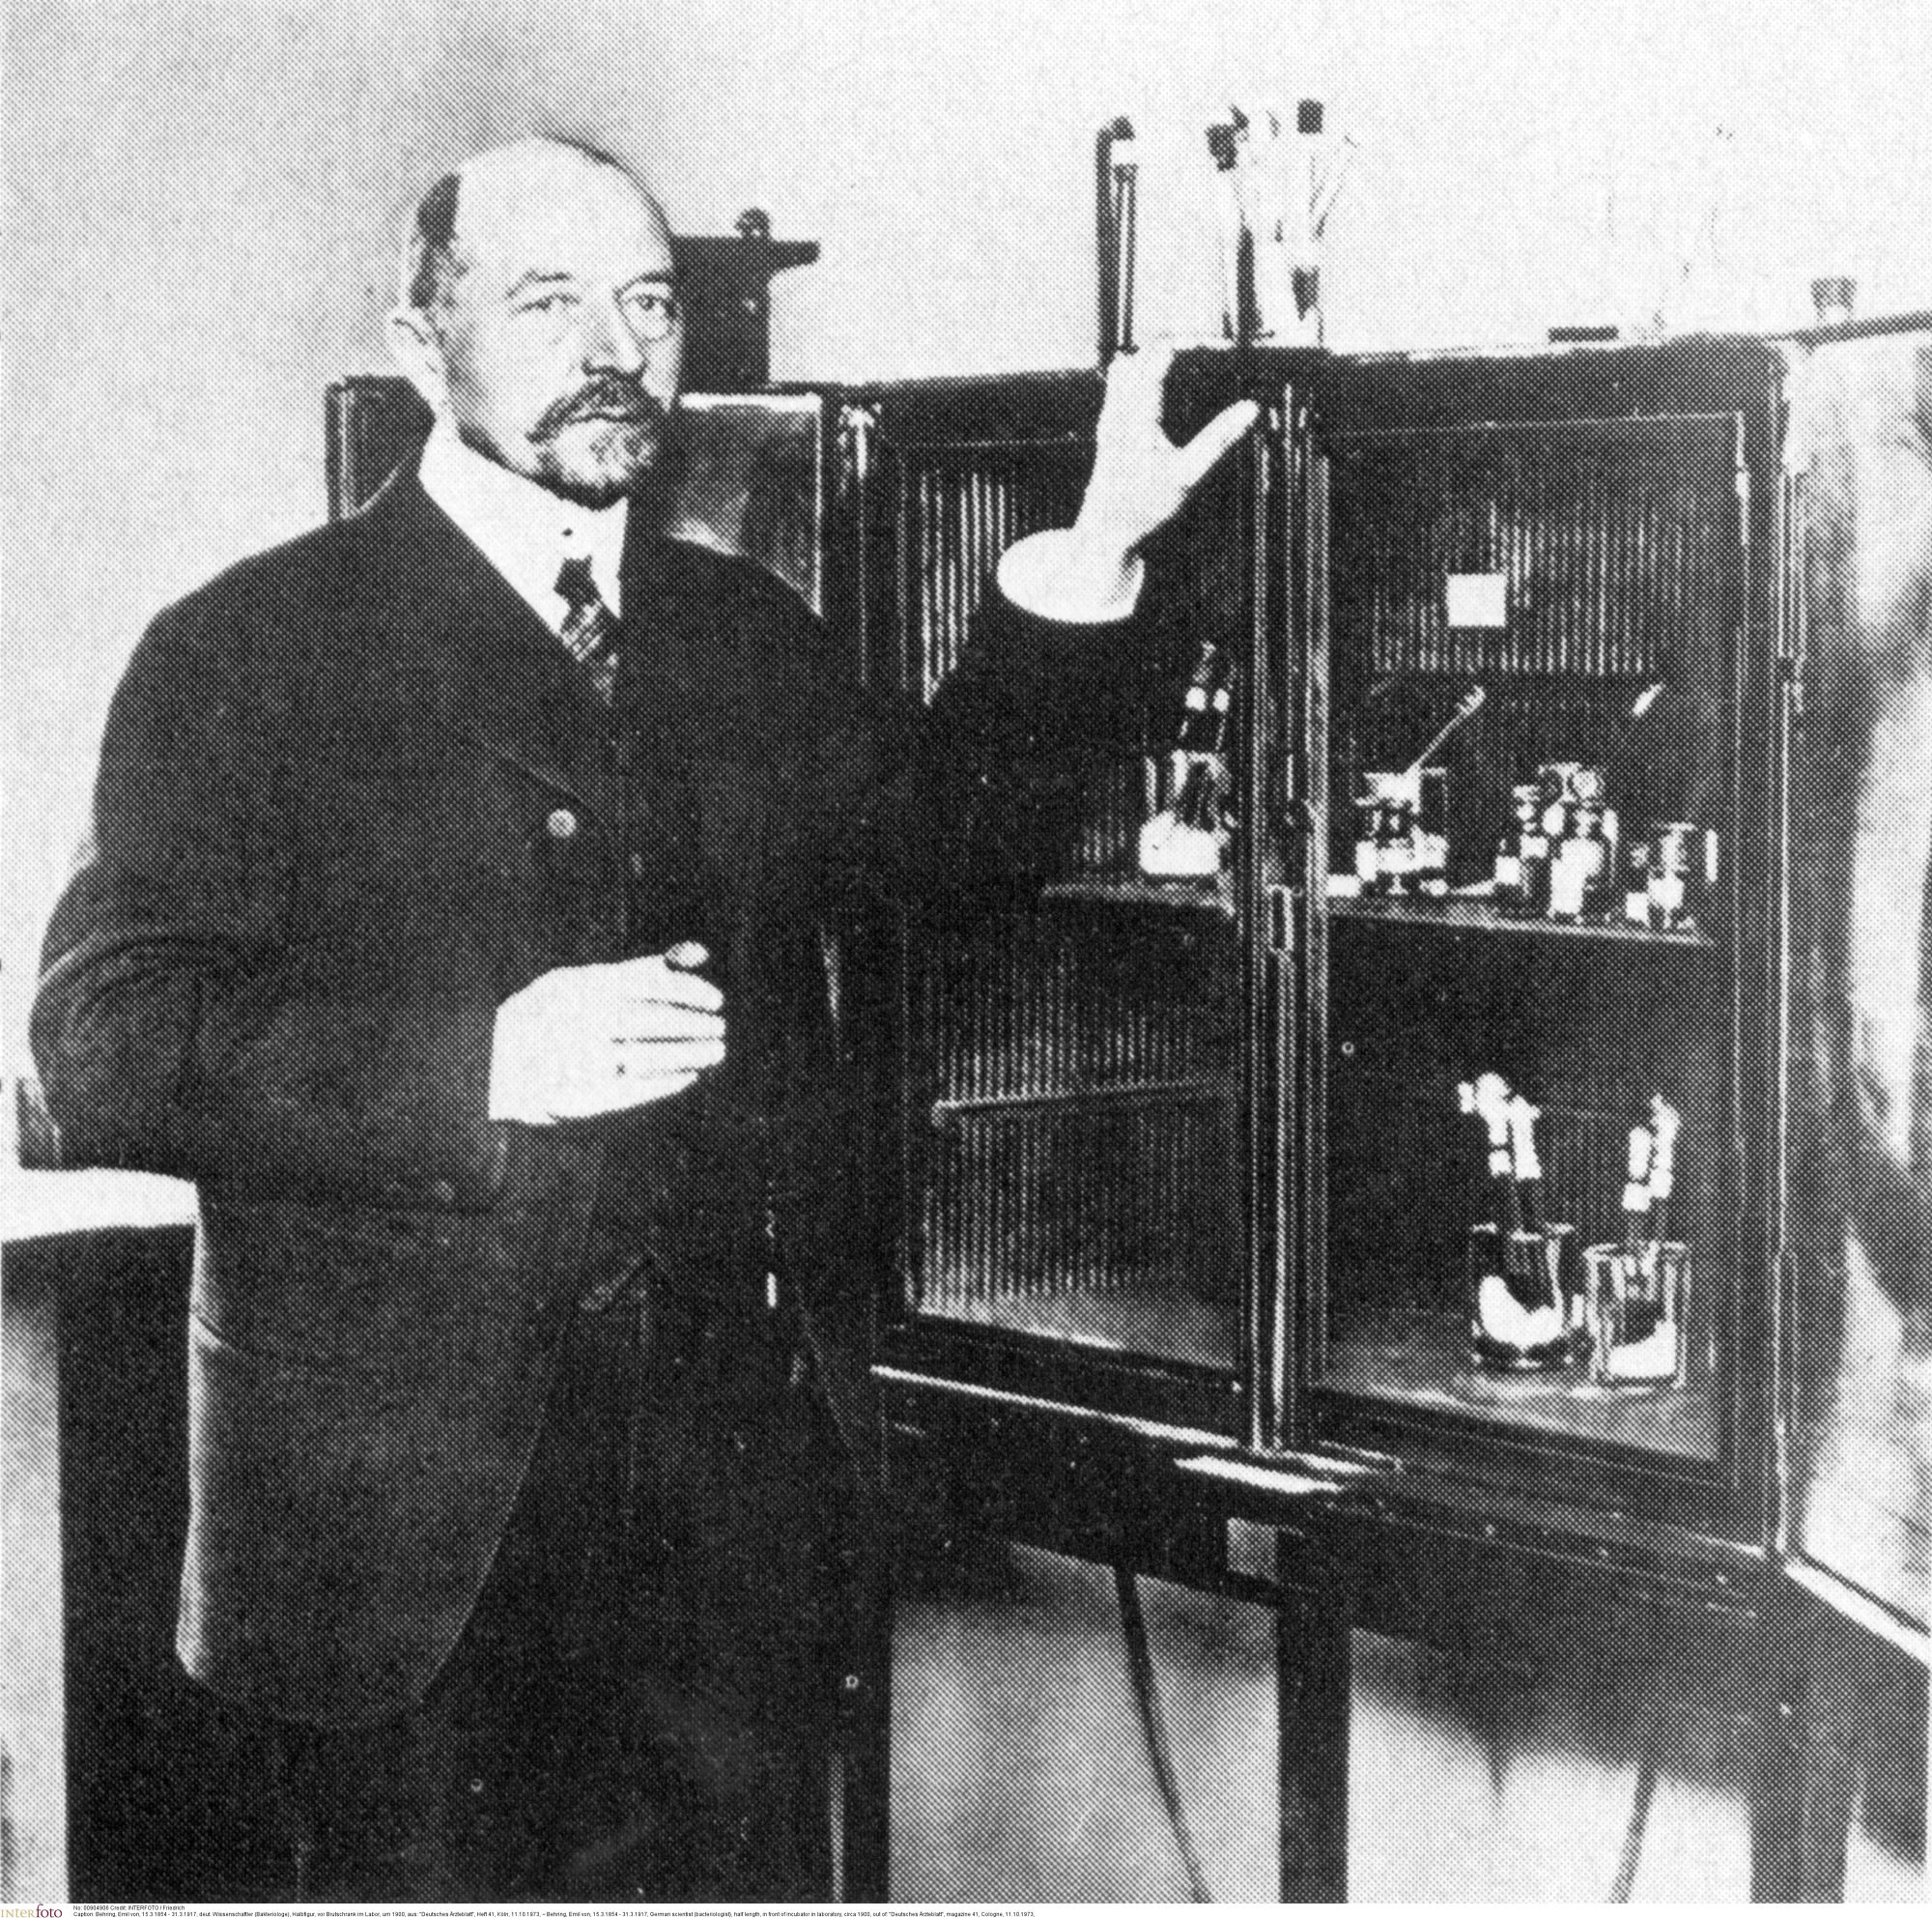 Foto em preto e branco do médico alemão Emil von Behring ao lado de uma estante de altura média, cheia de medicamentos. Emil é calvo, usa barba e bigode, e veste terno e gravata.